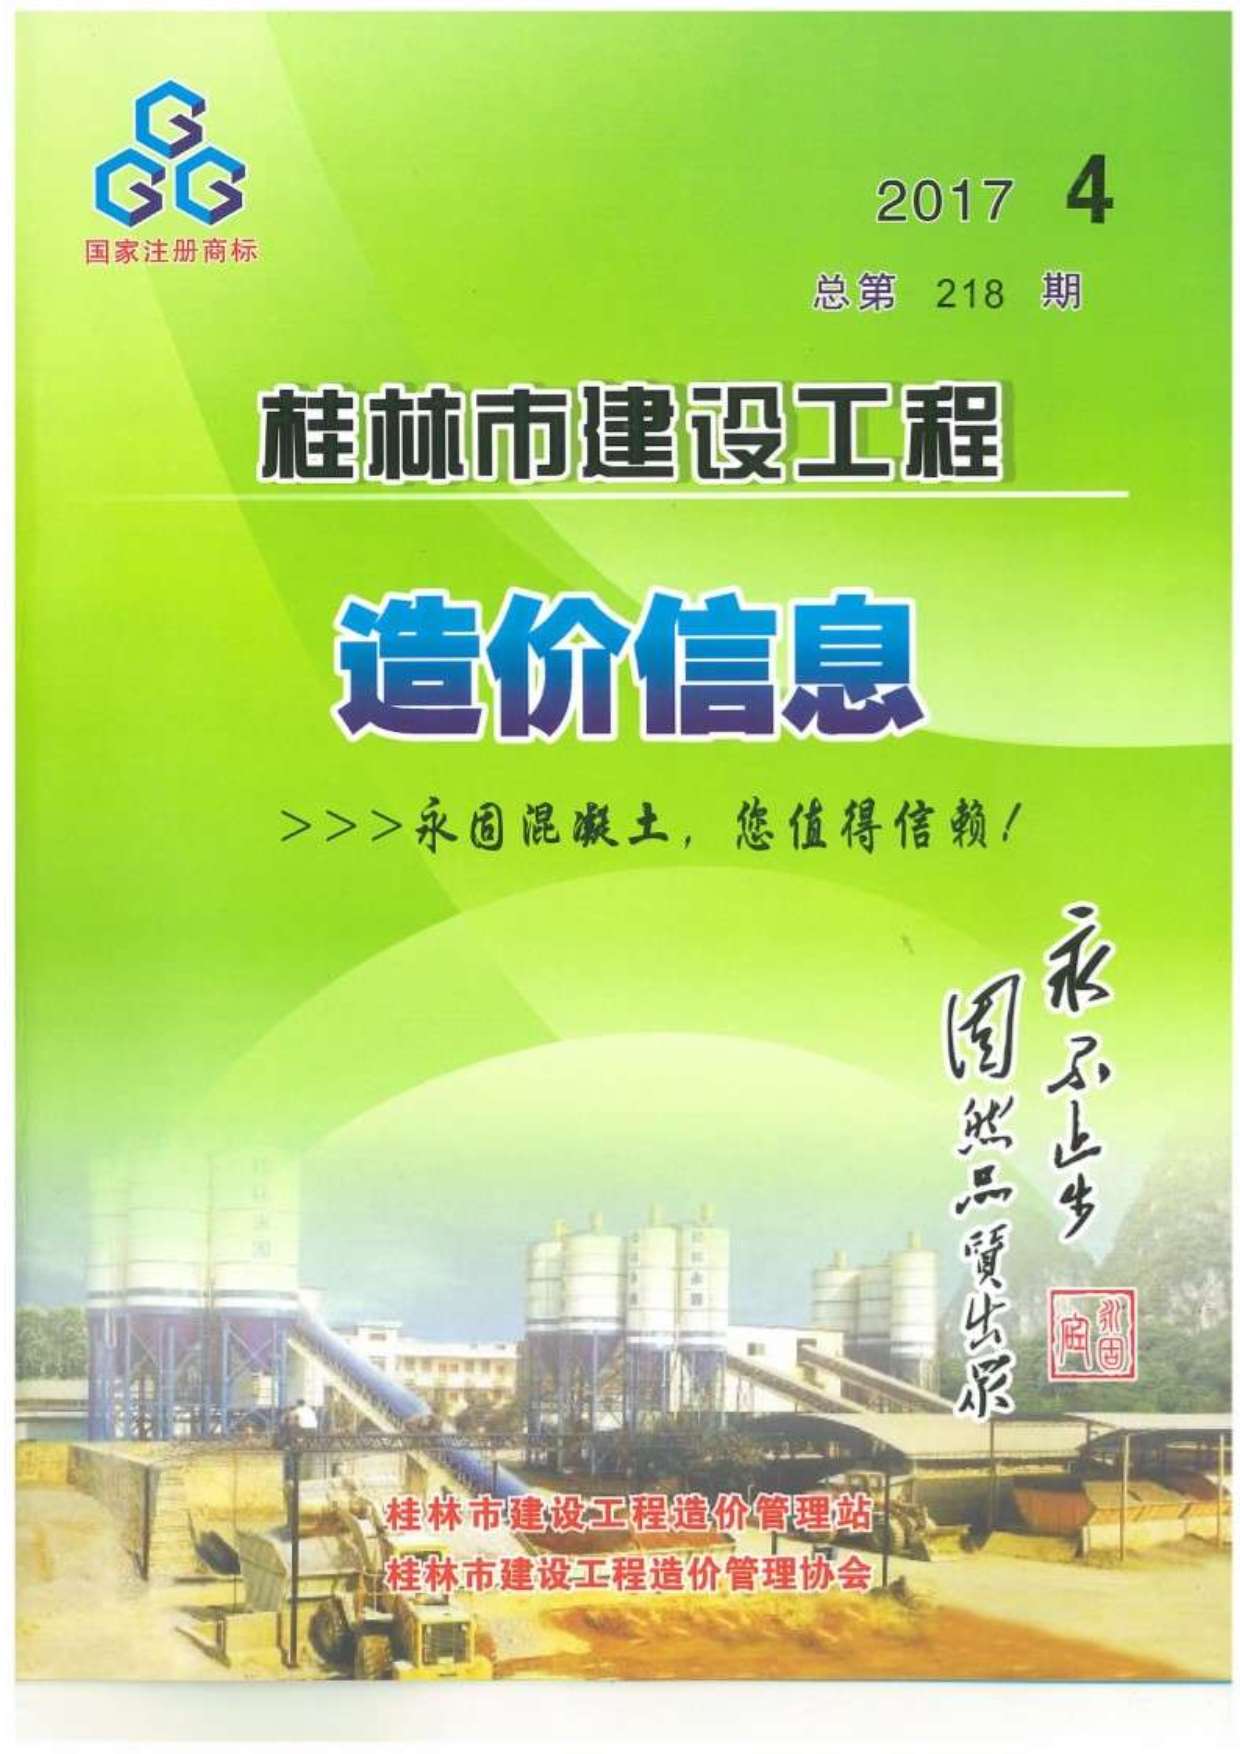 桂林市2017年4月建设工程造价信息